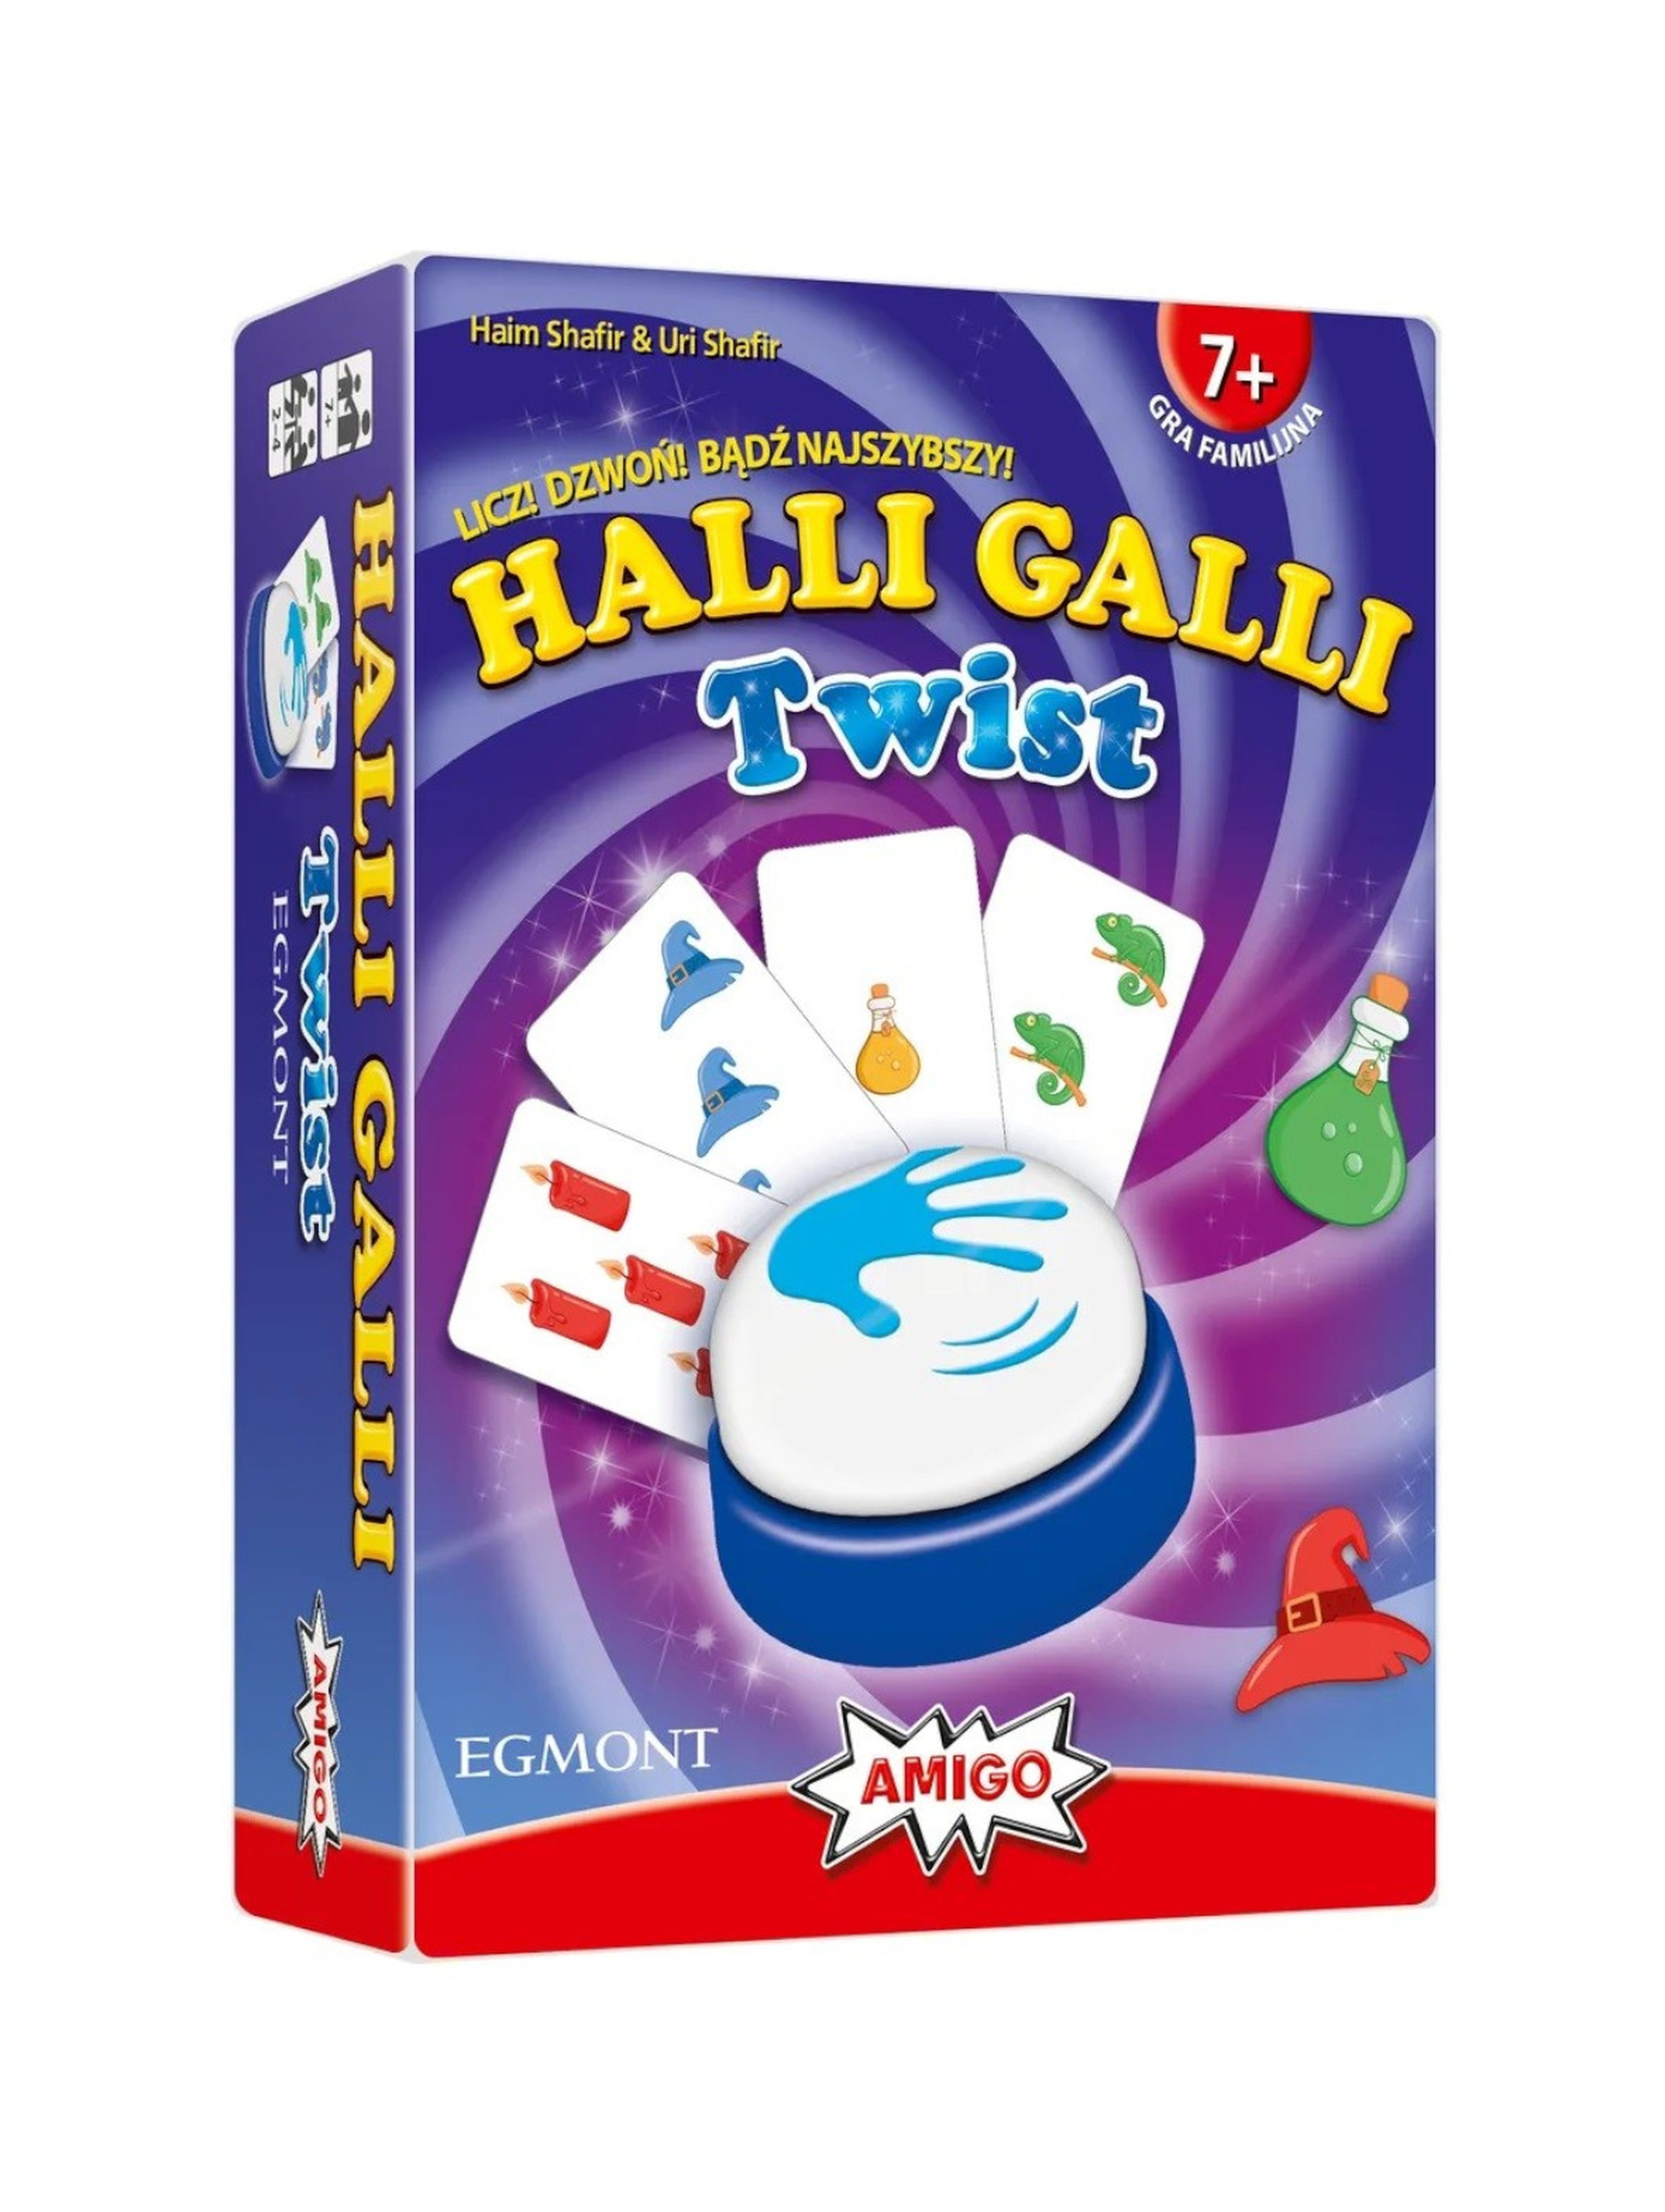 Gra Halli Galli Twist (PL)